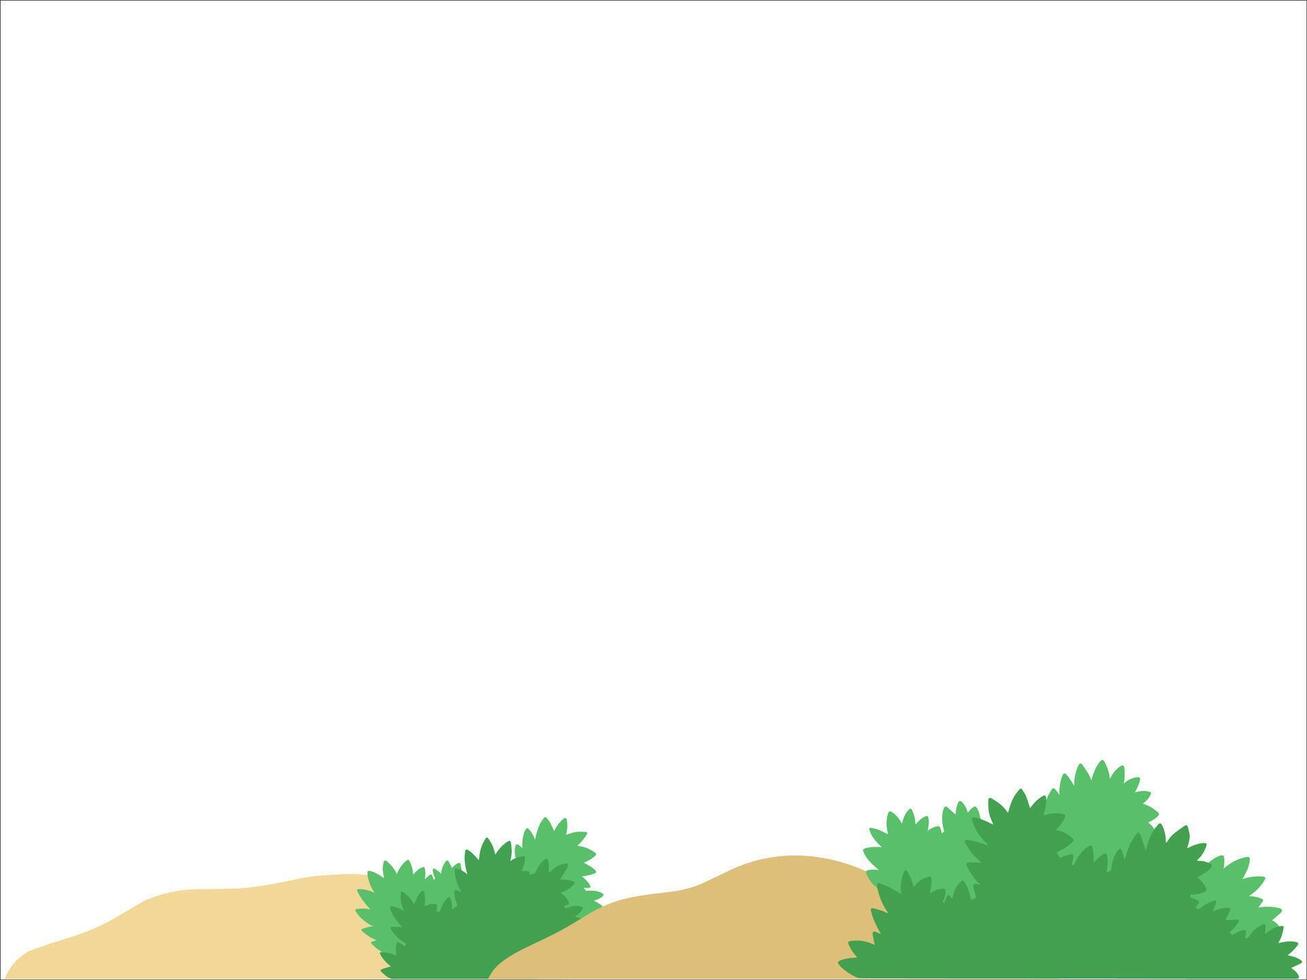 Grass Landscape Land Background Illustration vector